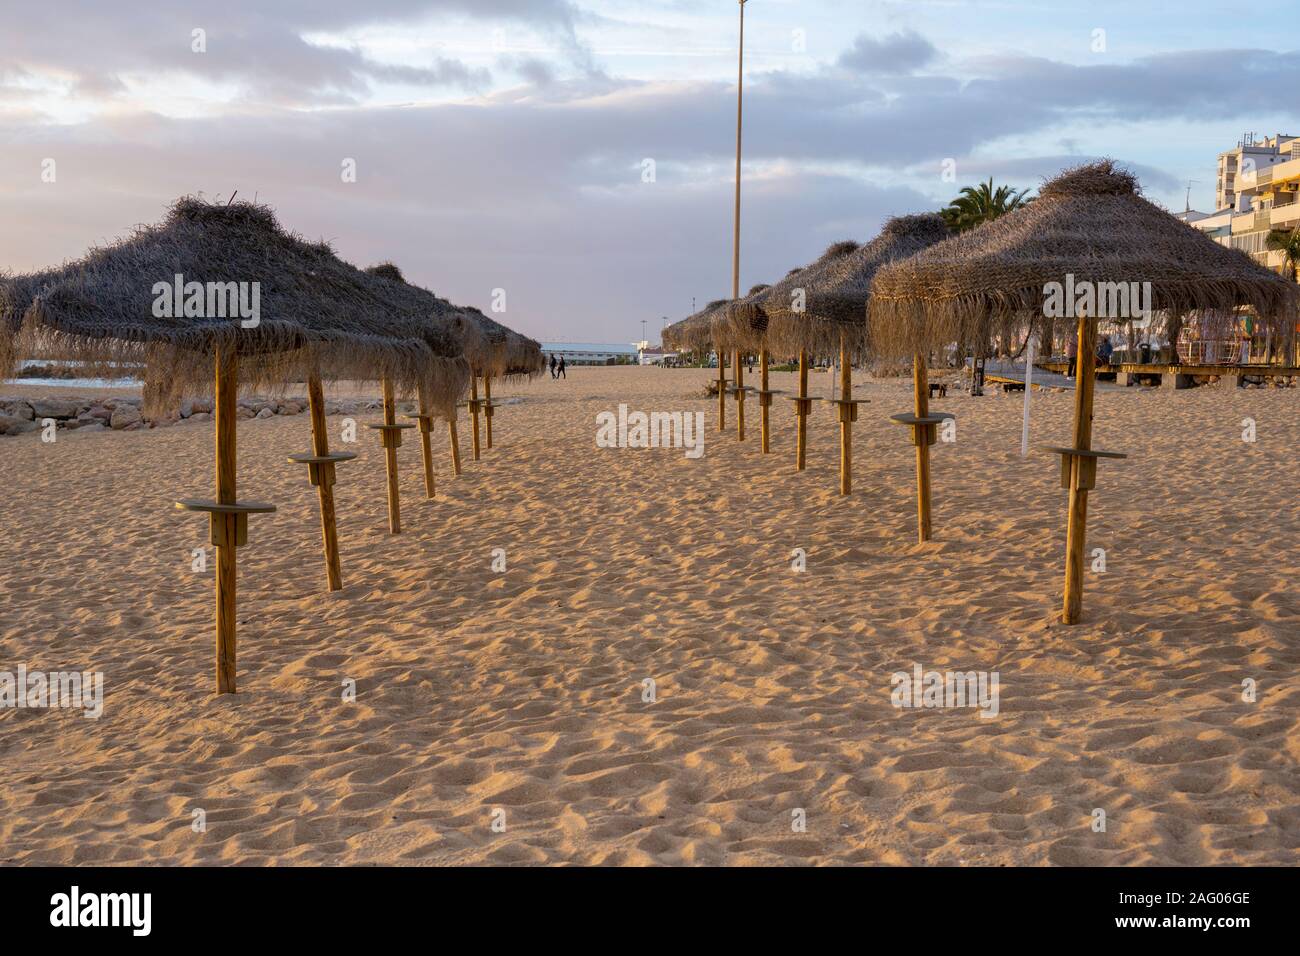 Quarteira, Portugal. La cabane de plage de chaume de paille se trouve sur la plage de Quarteira, Portugal, une petite ville de l'Algarve. Banque D'Images